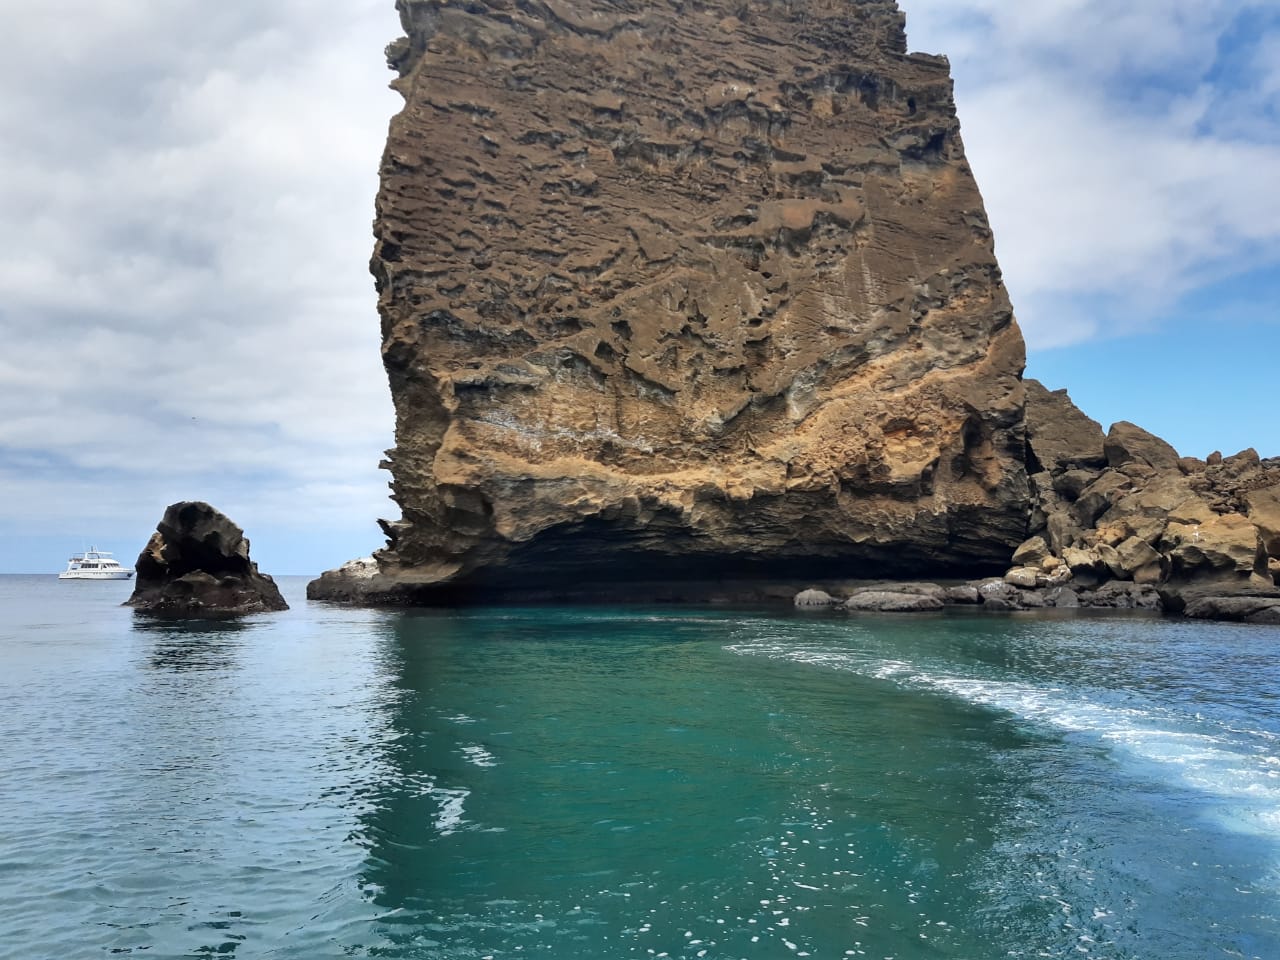 O que mudou nas viagens. Foto do mar azul esverdeado, com uma grande pedra em formato oval formando uma parede no meio.